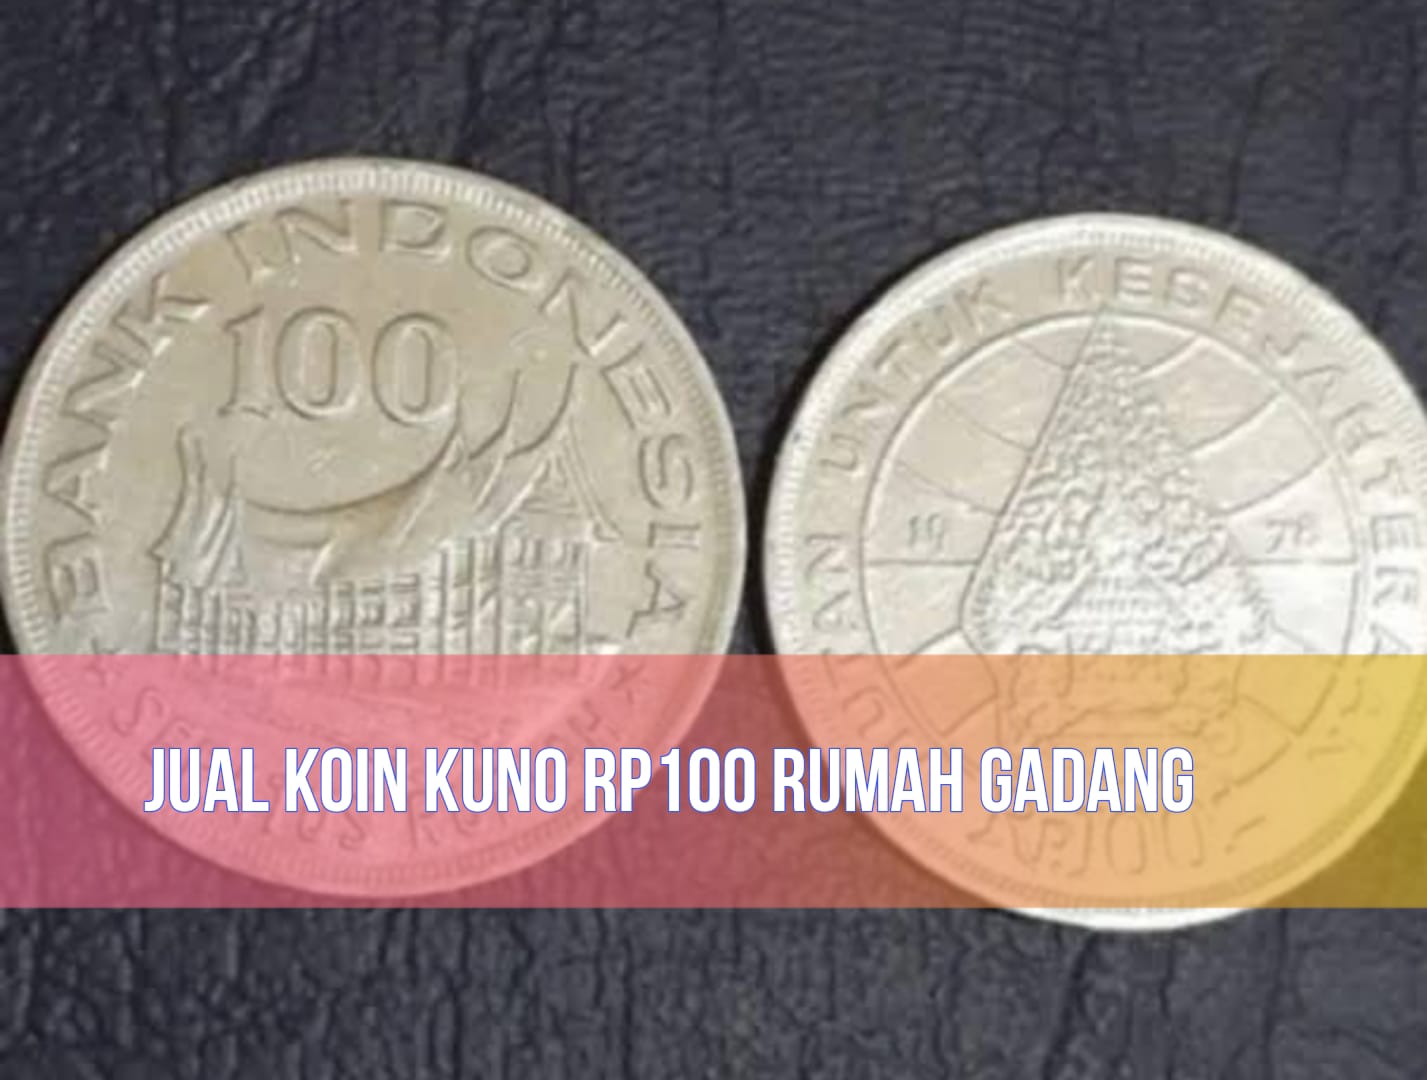 Jual Koin Kuno Rp100 Rumah Gadang Laku Rp10.000.000, Benarkah? Cek Faktanya!